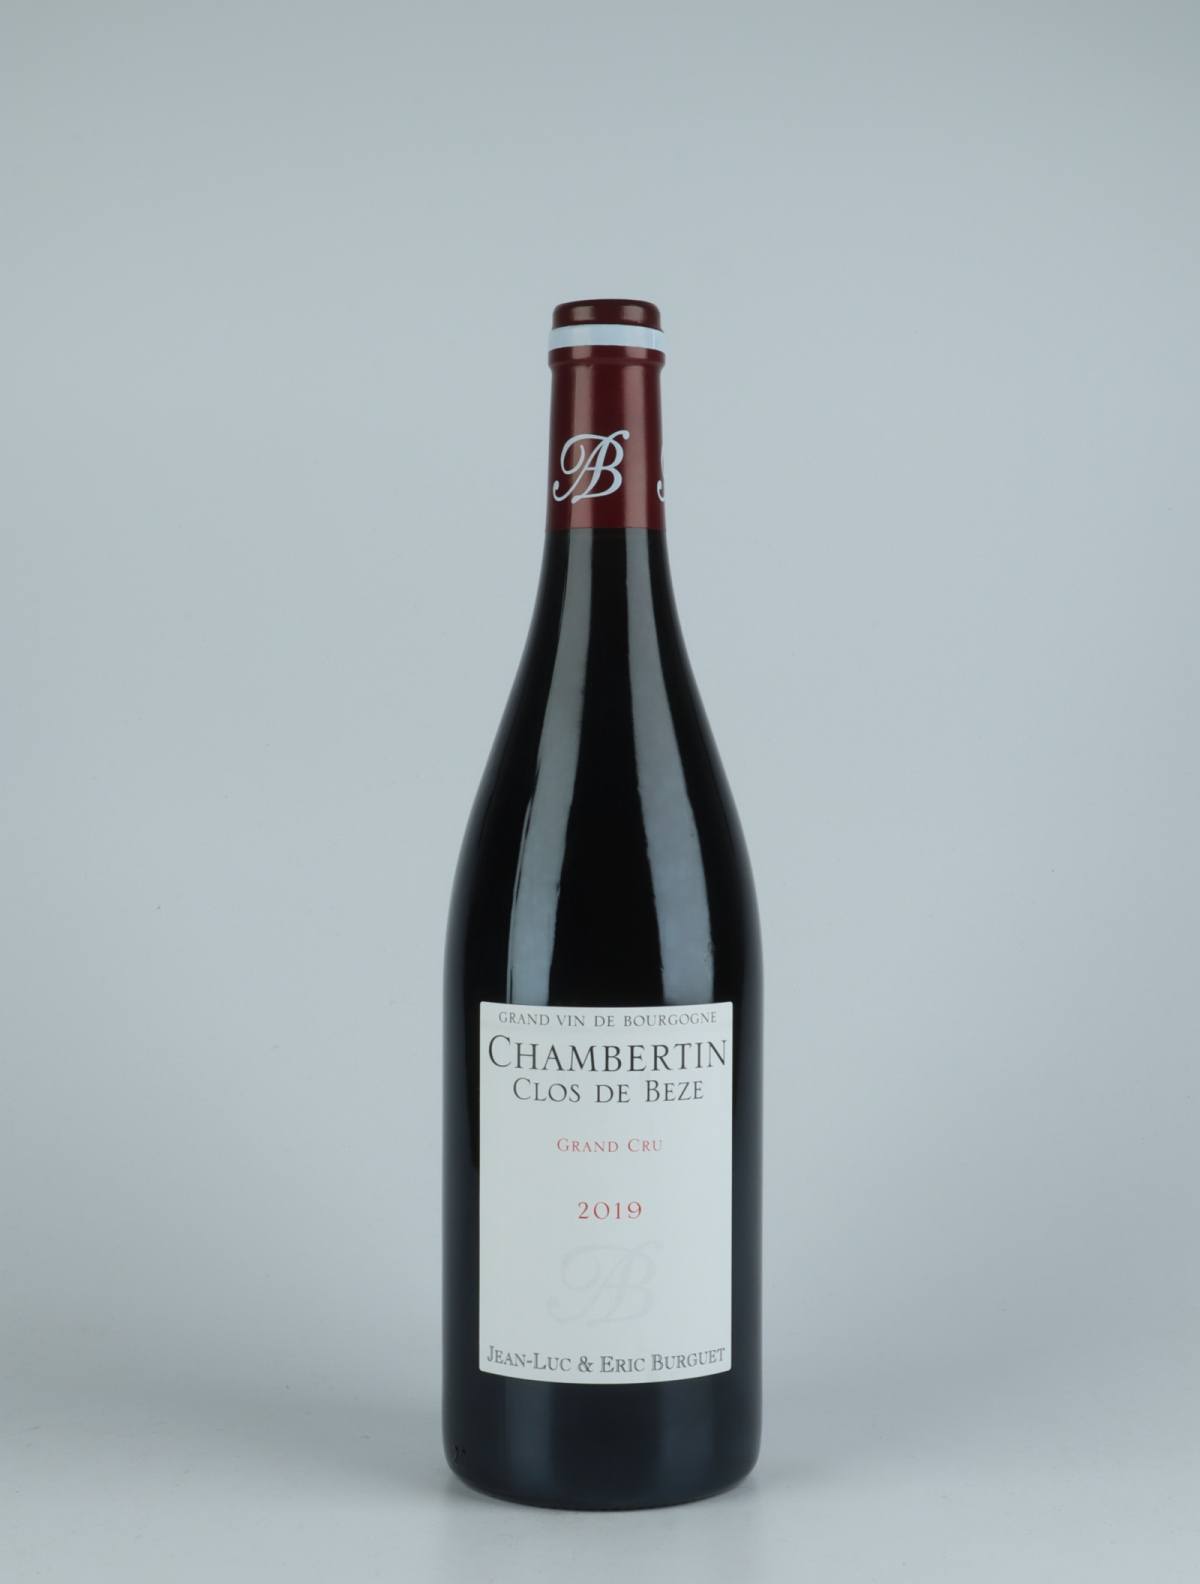 A bottle 2019 Chambertin Clos de Bèze Red wine from Jean-Luc & Eric Burguet, Burgundy in France